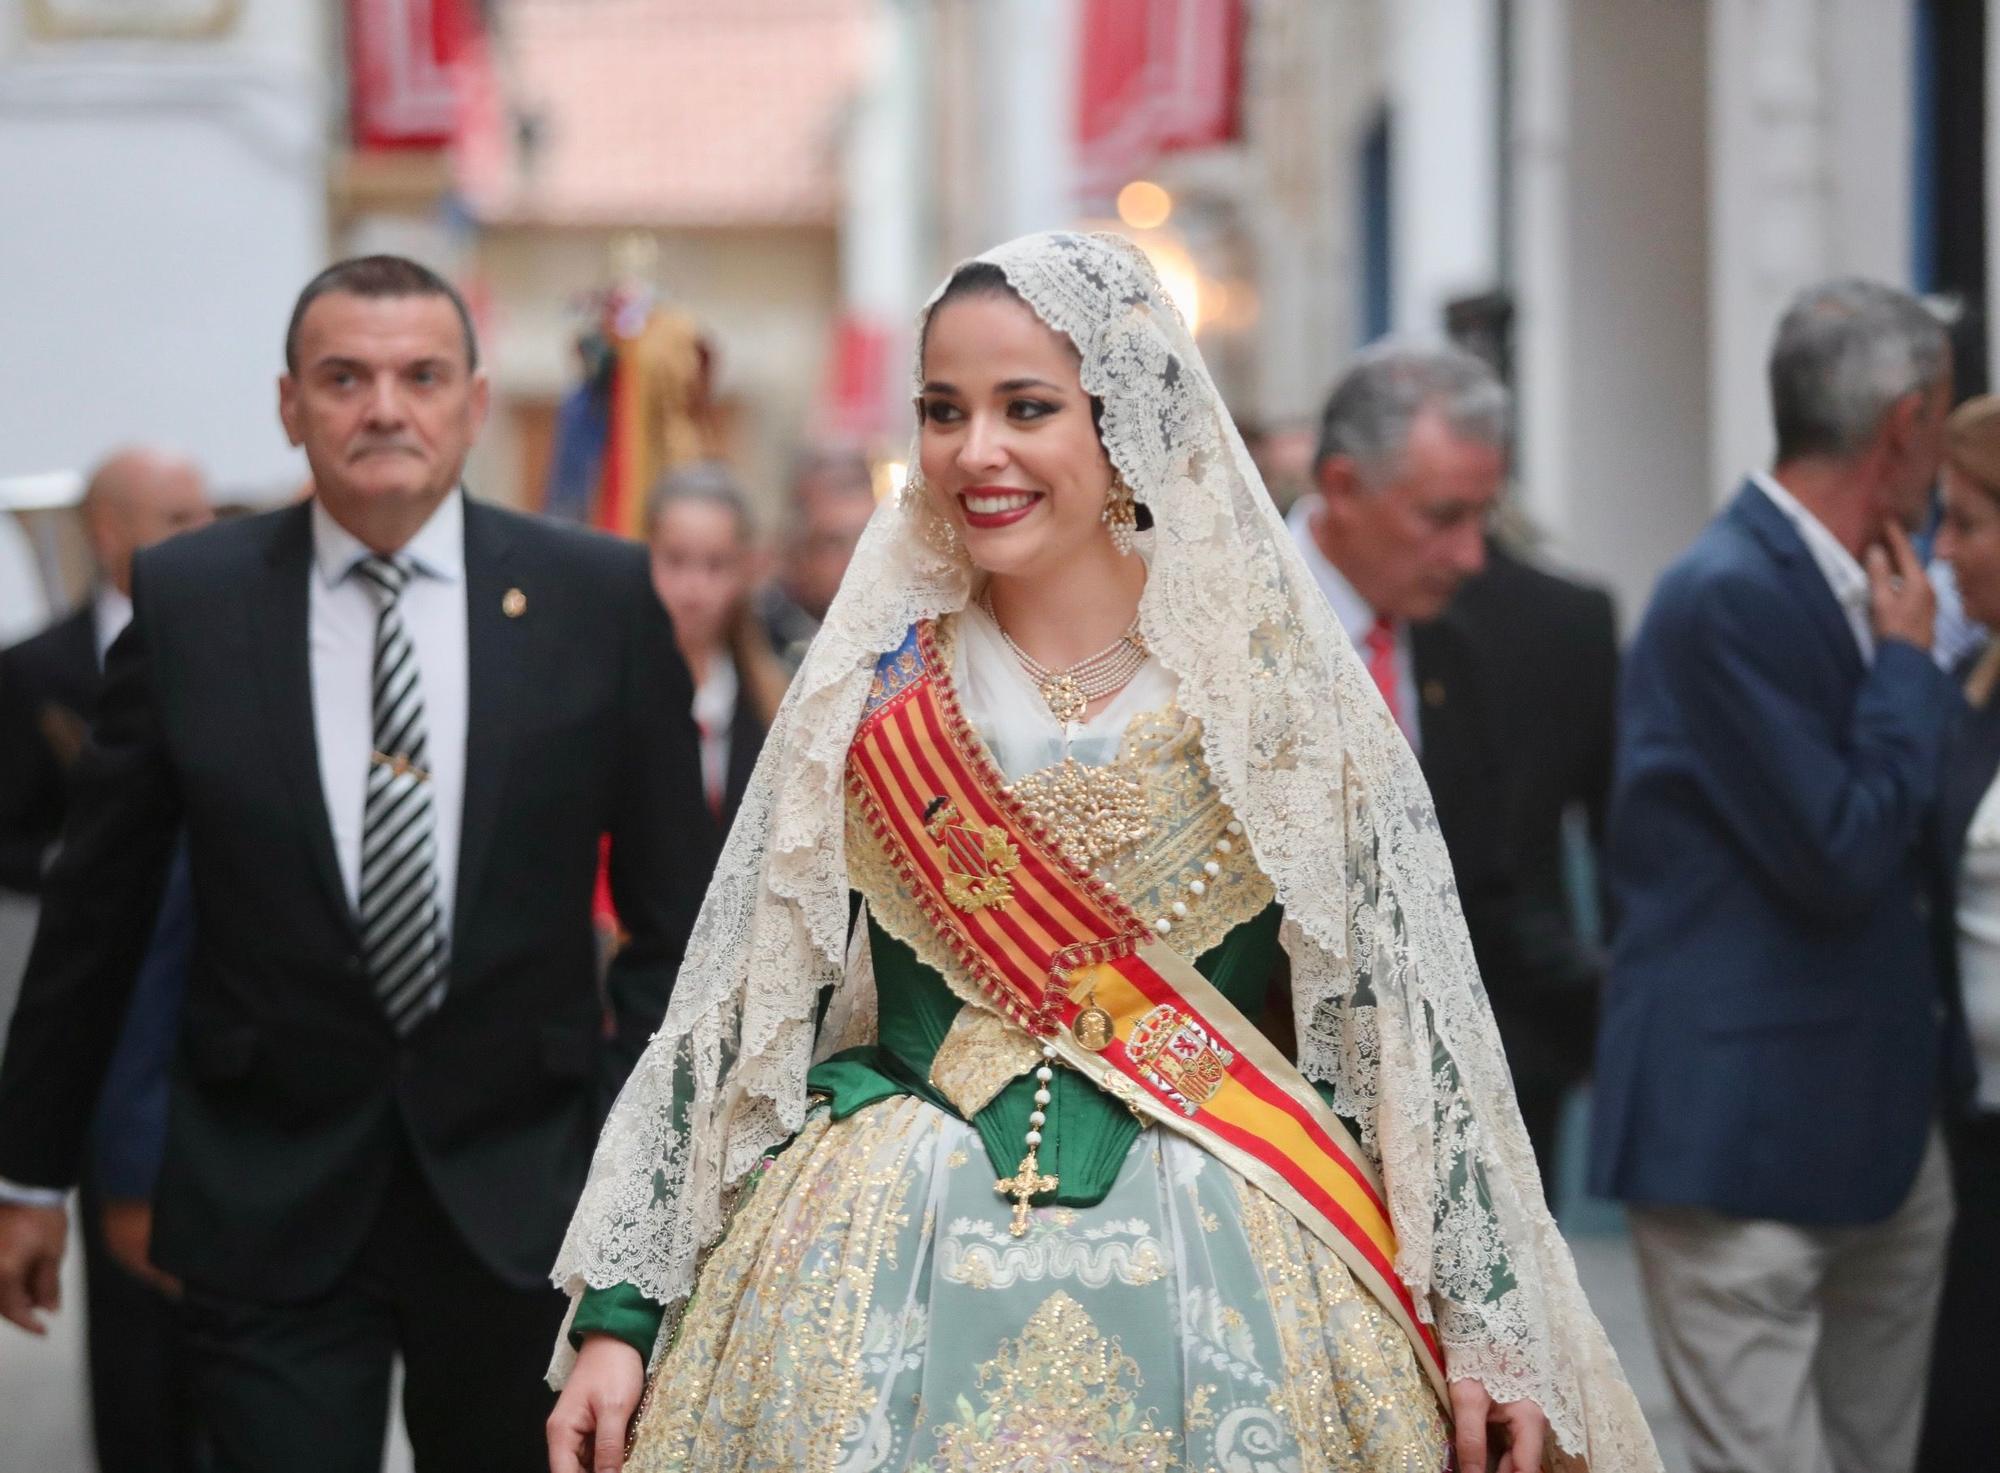 Carmen vuelve a casa: procesión de la Merced en su pueblo, Algar de Palancia